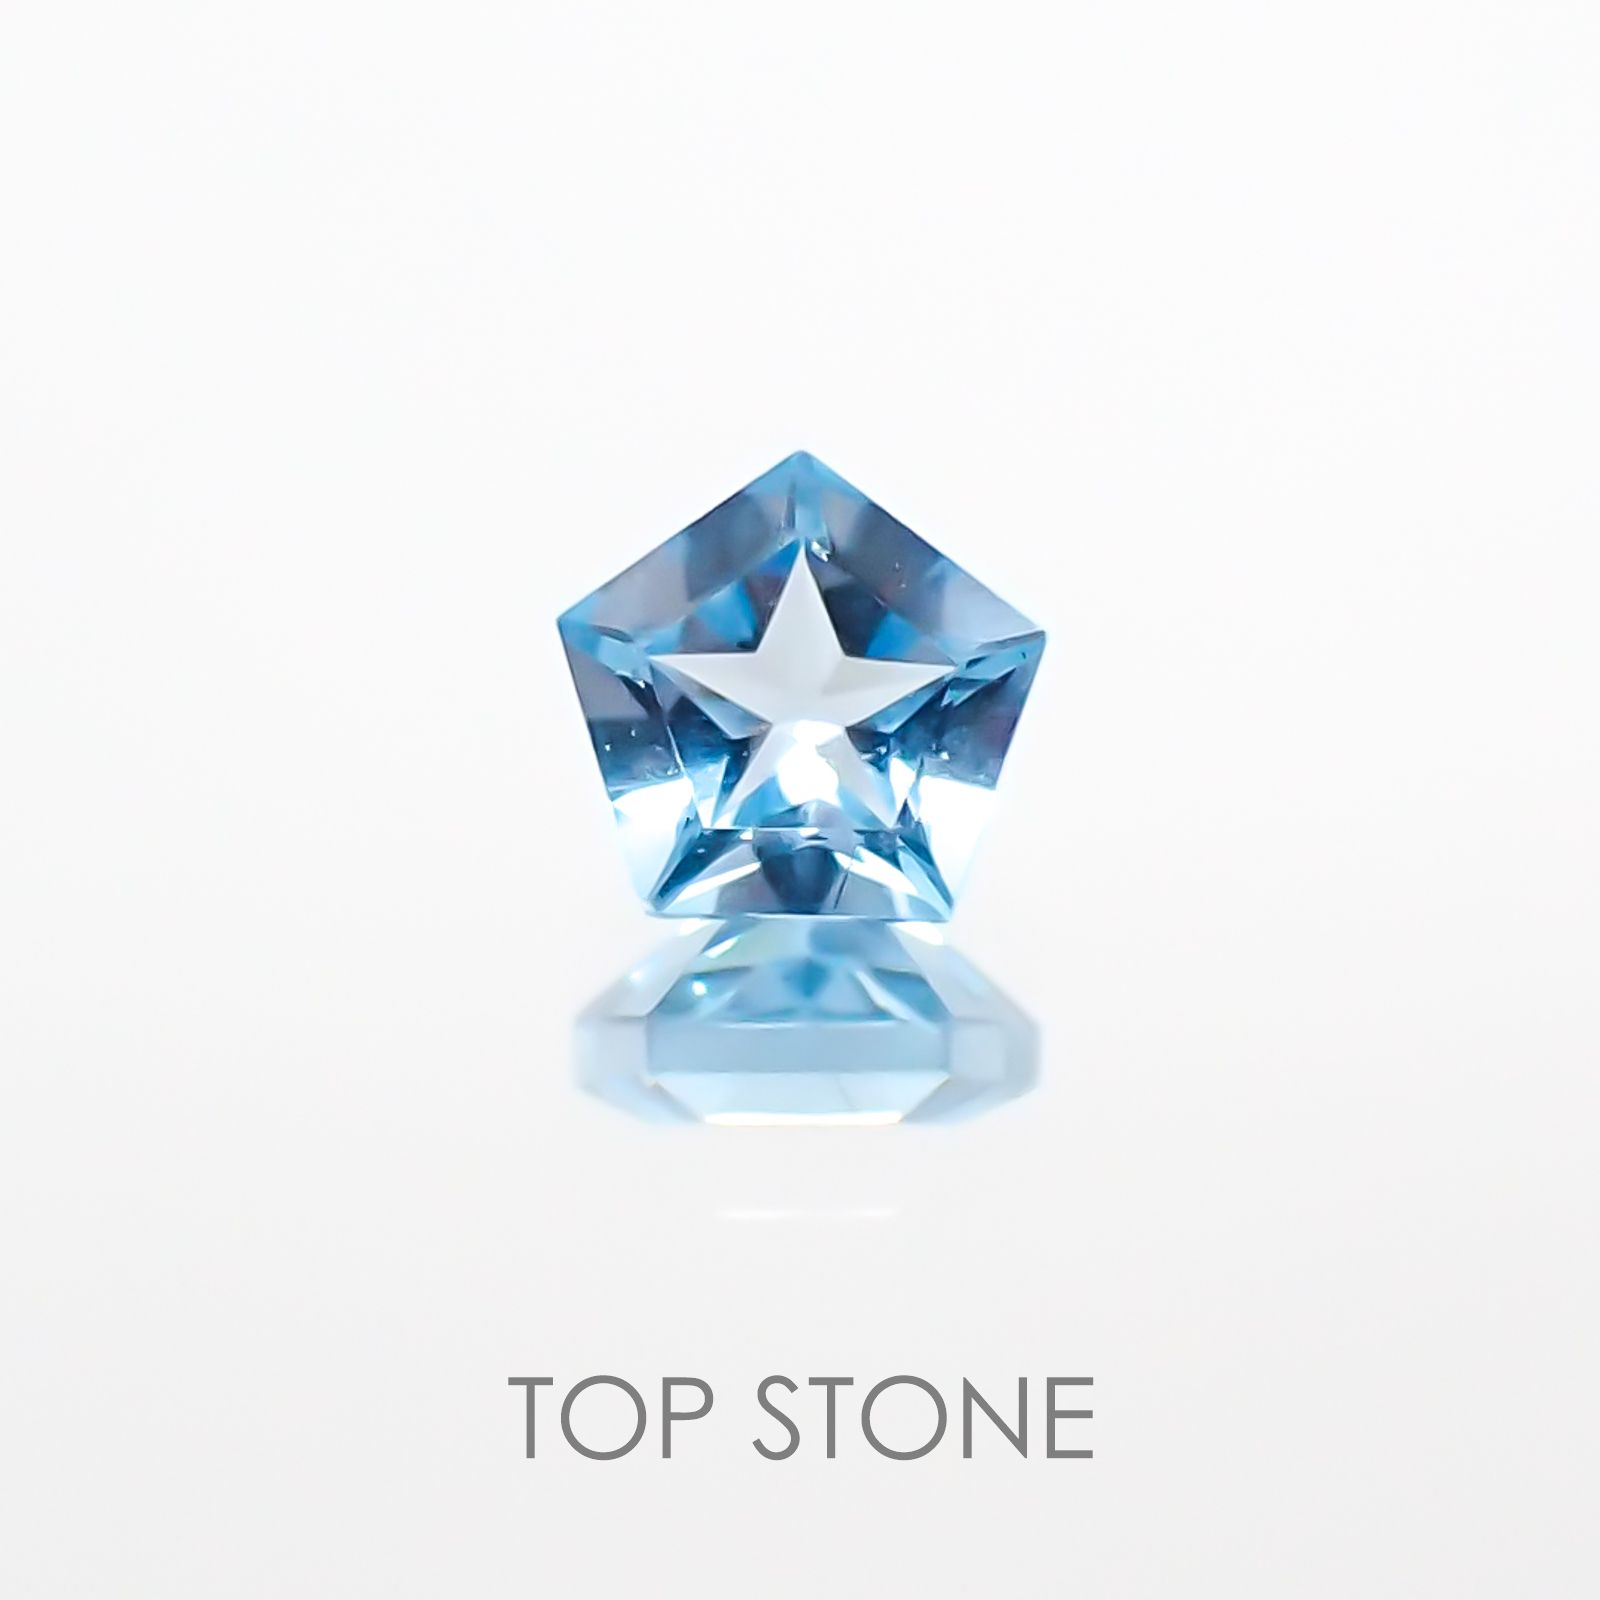 宝石名から探す / トパーズ 通販 | TOP STONE(トップストーン)